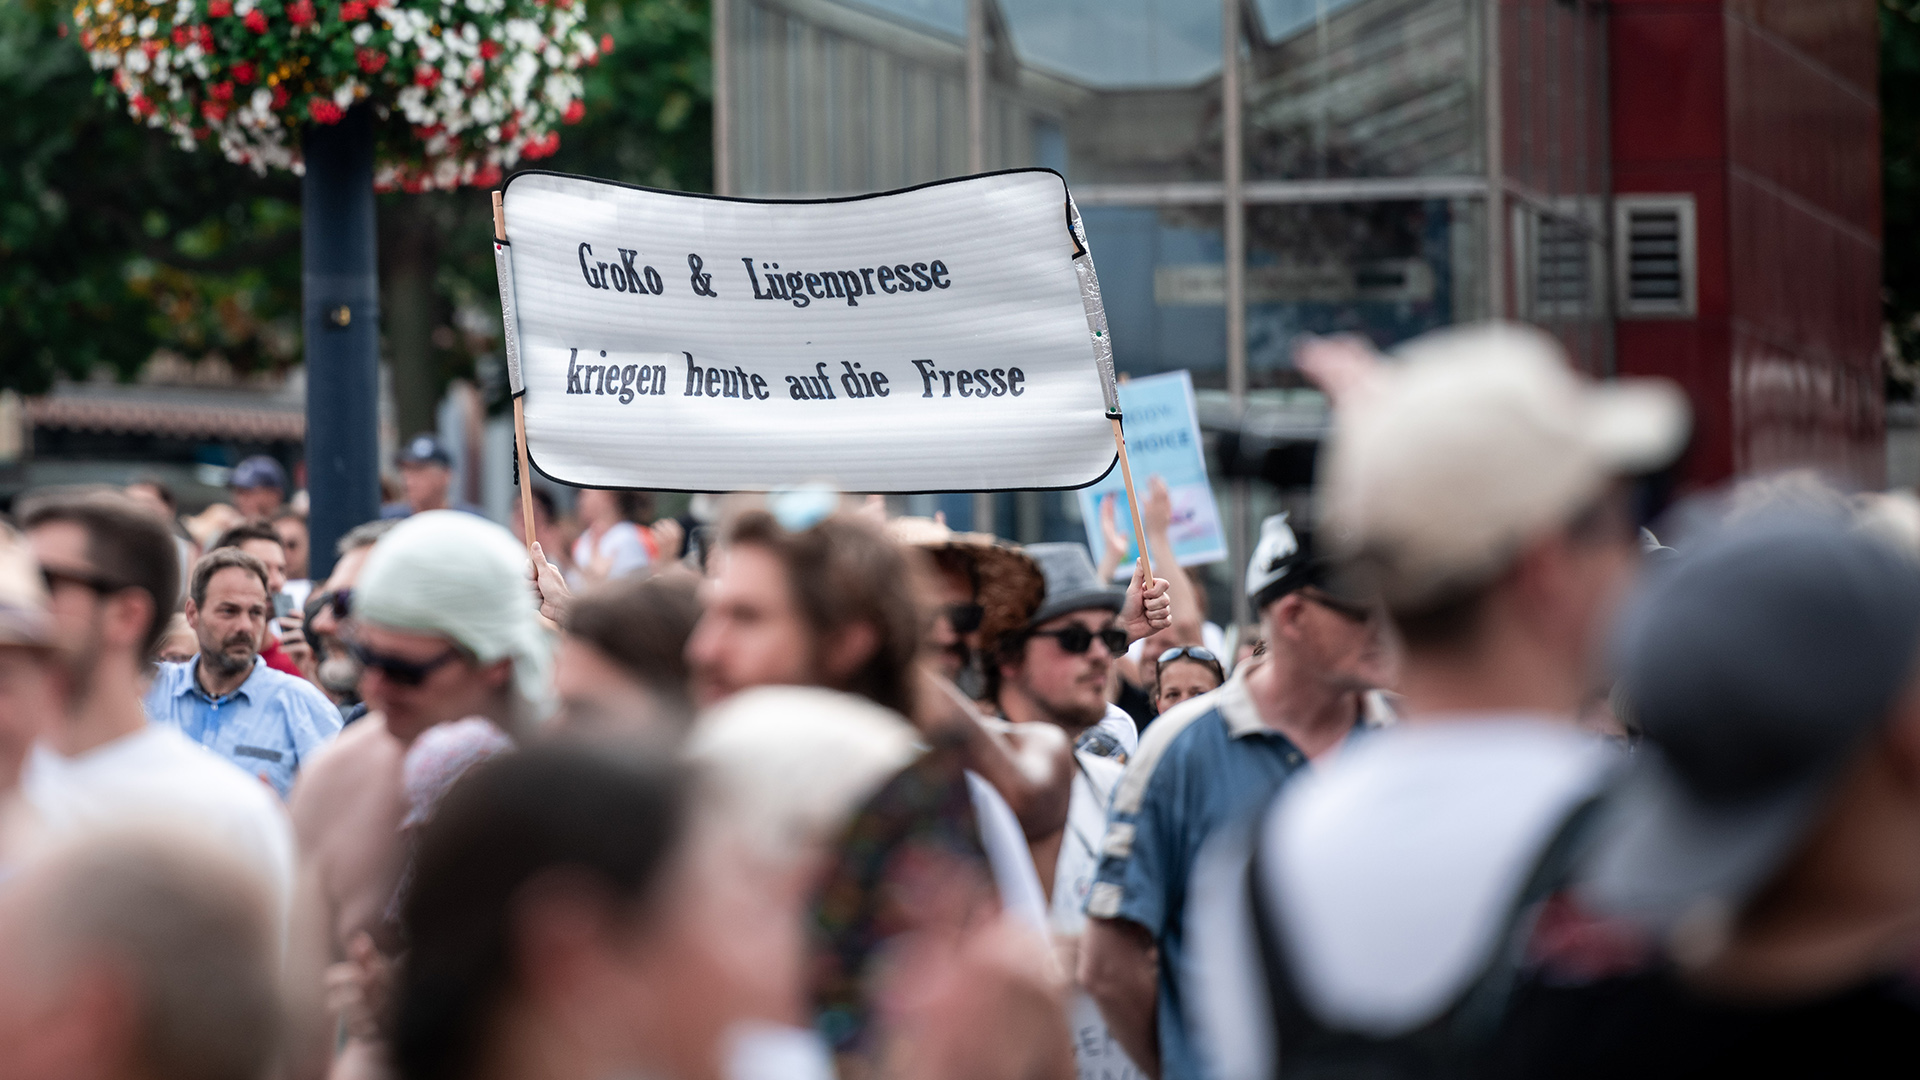 Nordrhein-Westfalen, Dortmund: Ein Teilnehmer der Demonstration "Querdenken-231"hält ein Schild auf dem "Groko und Lügenpresse kriegen heute auf die Fresse" steht, Archivbild August 2020